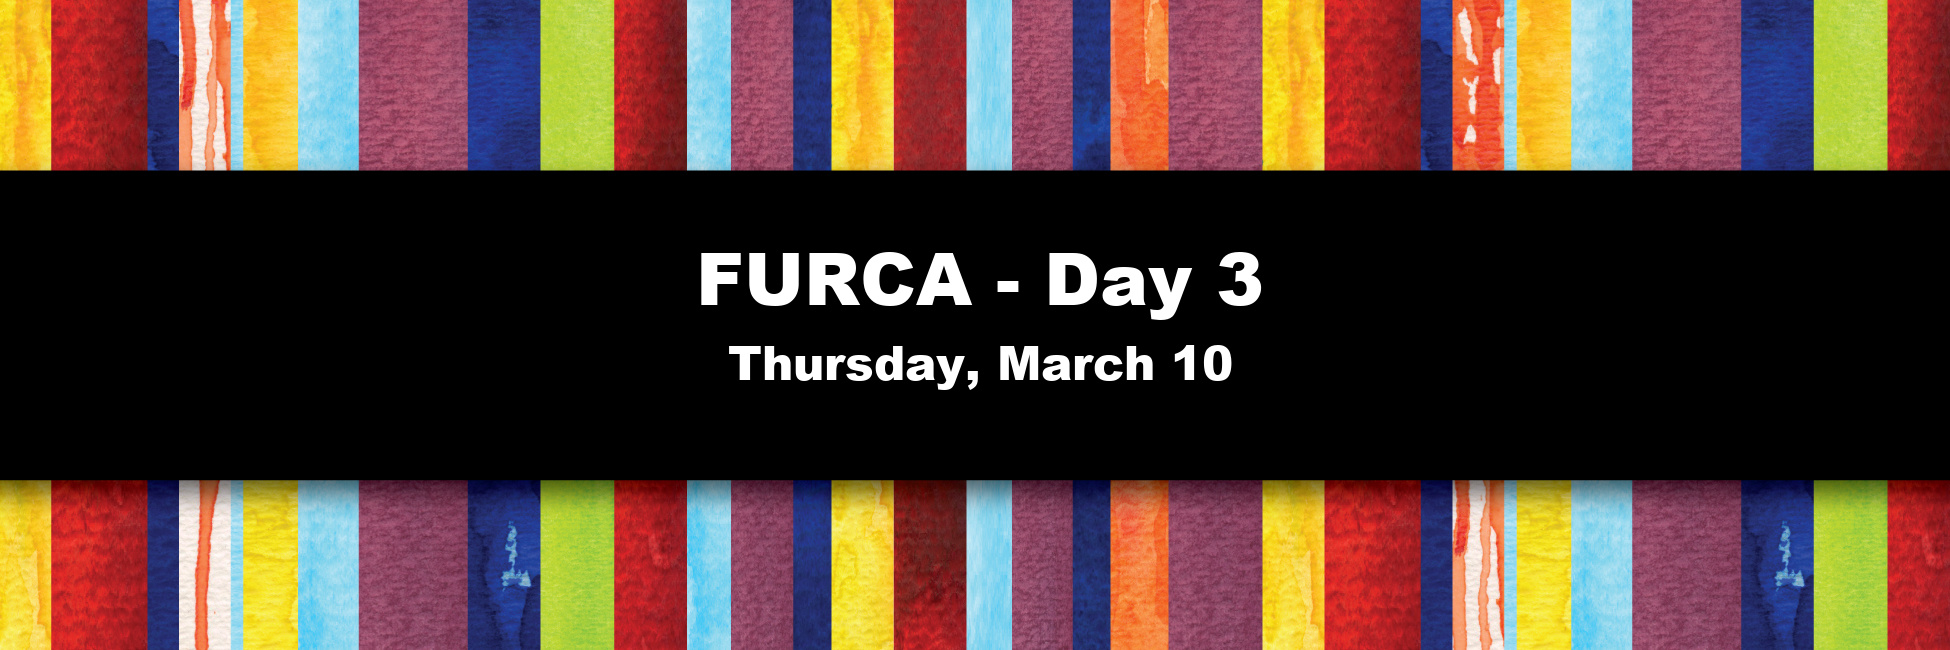 furca-day-3-2022-banner.jpg